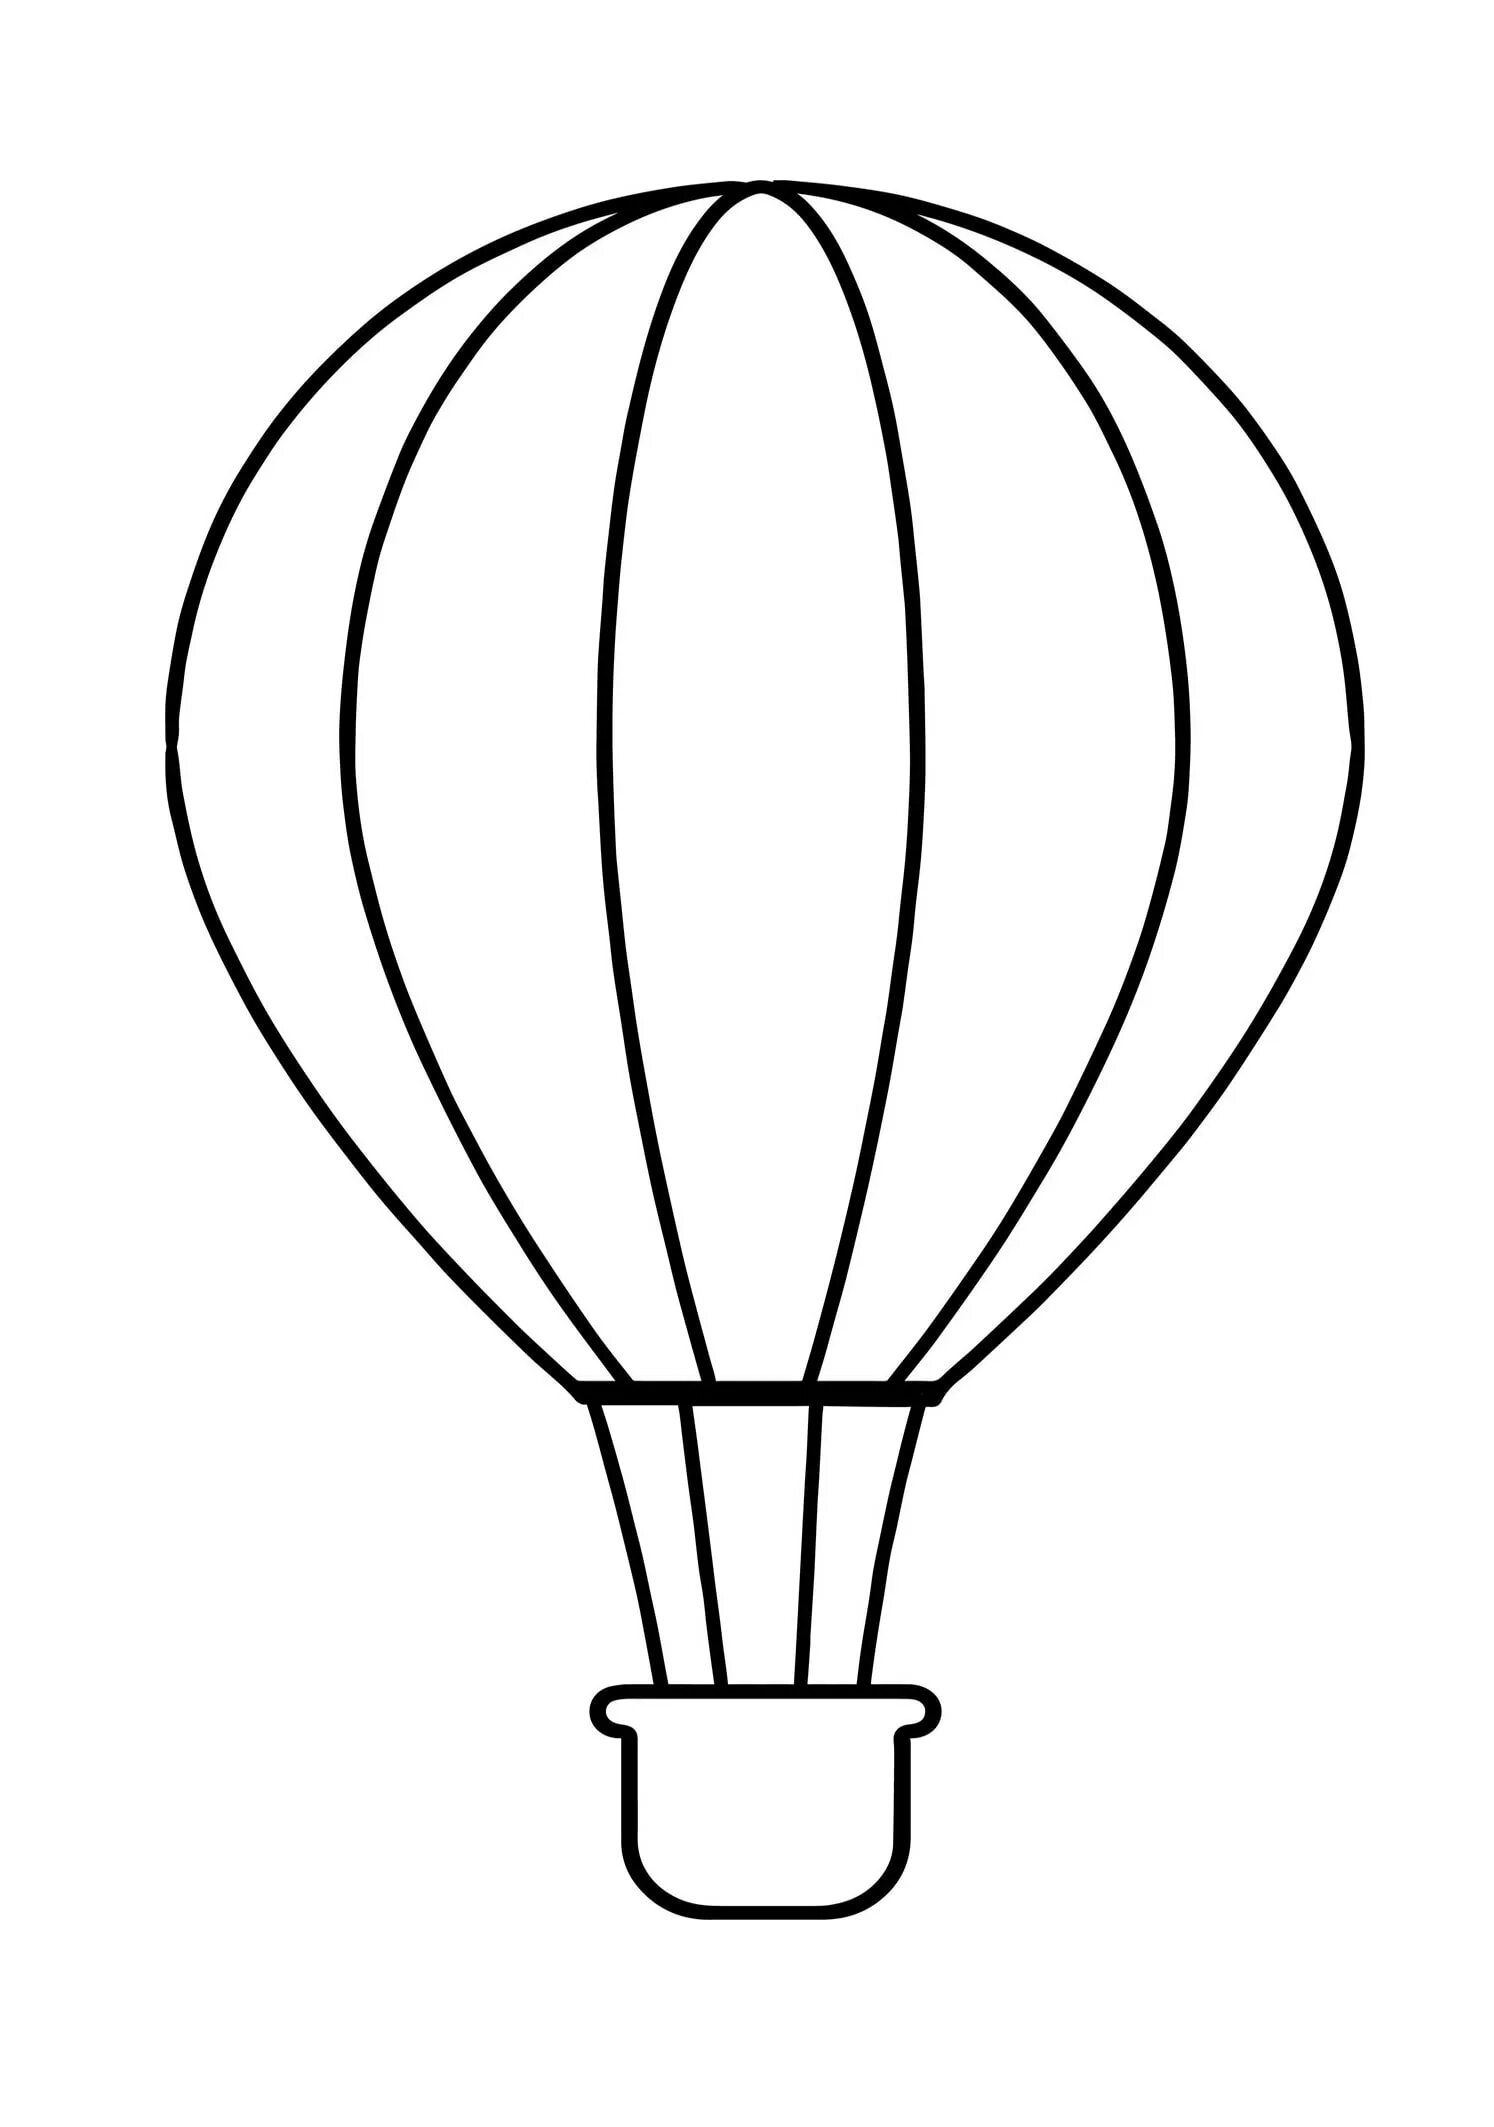 Макеты воздушных шаров. Воздушный шар раскраска. Воздушный шар раскраска для детей. Раскразкавоздушныйшар. Воздушный арраскраска.